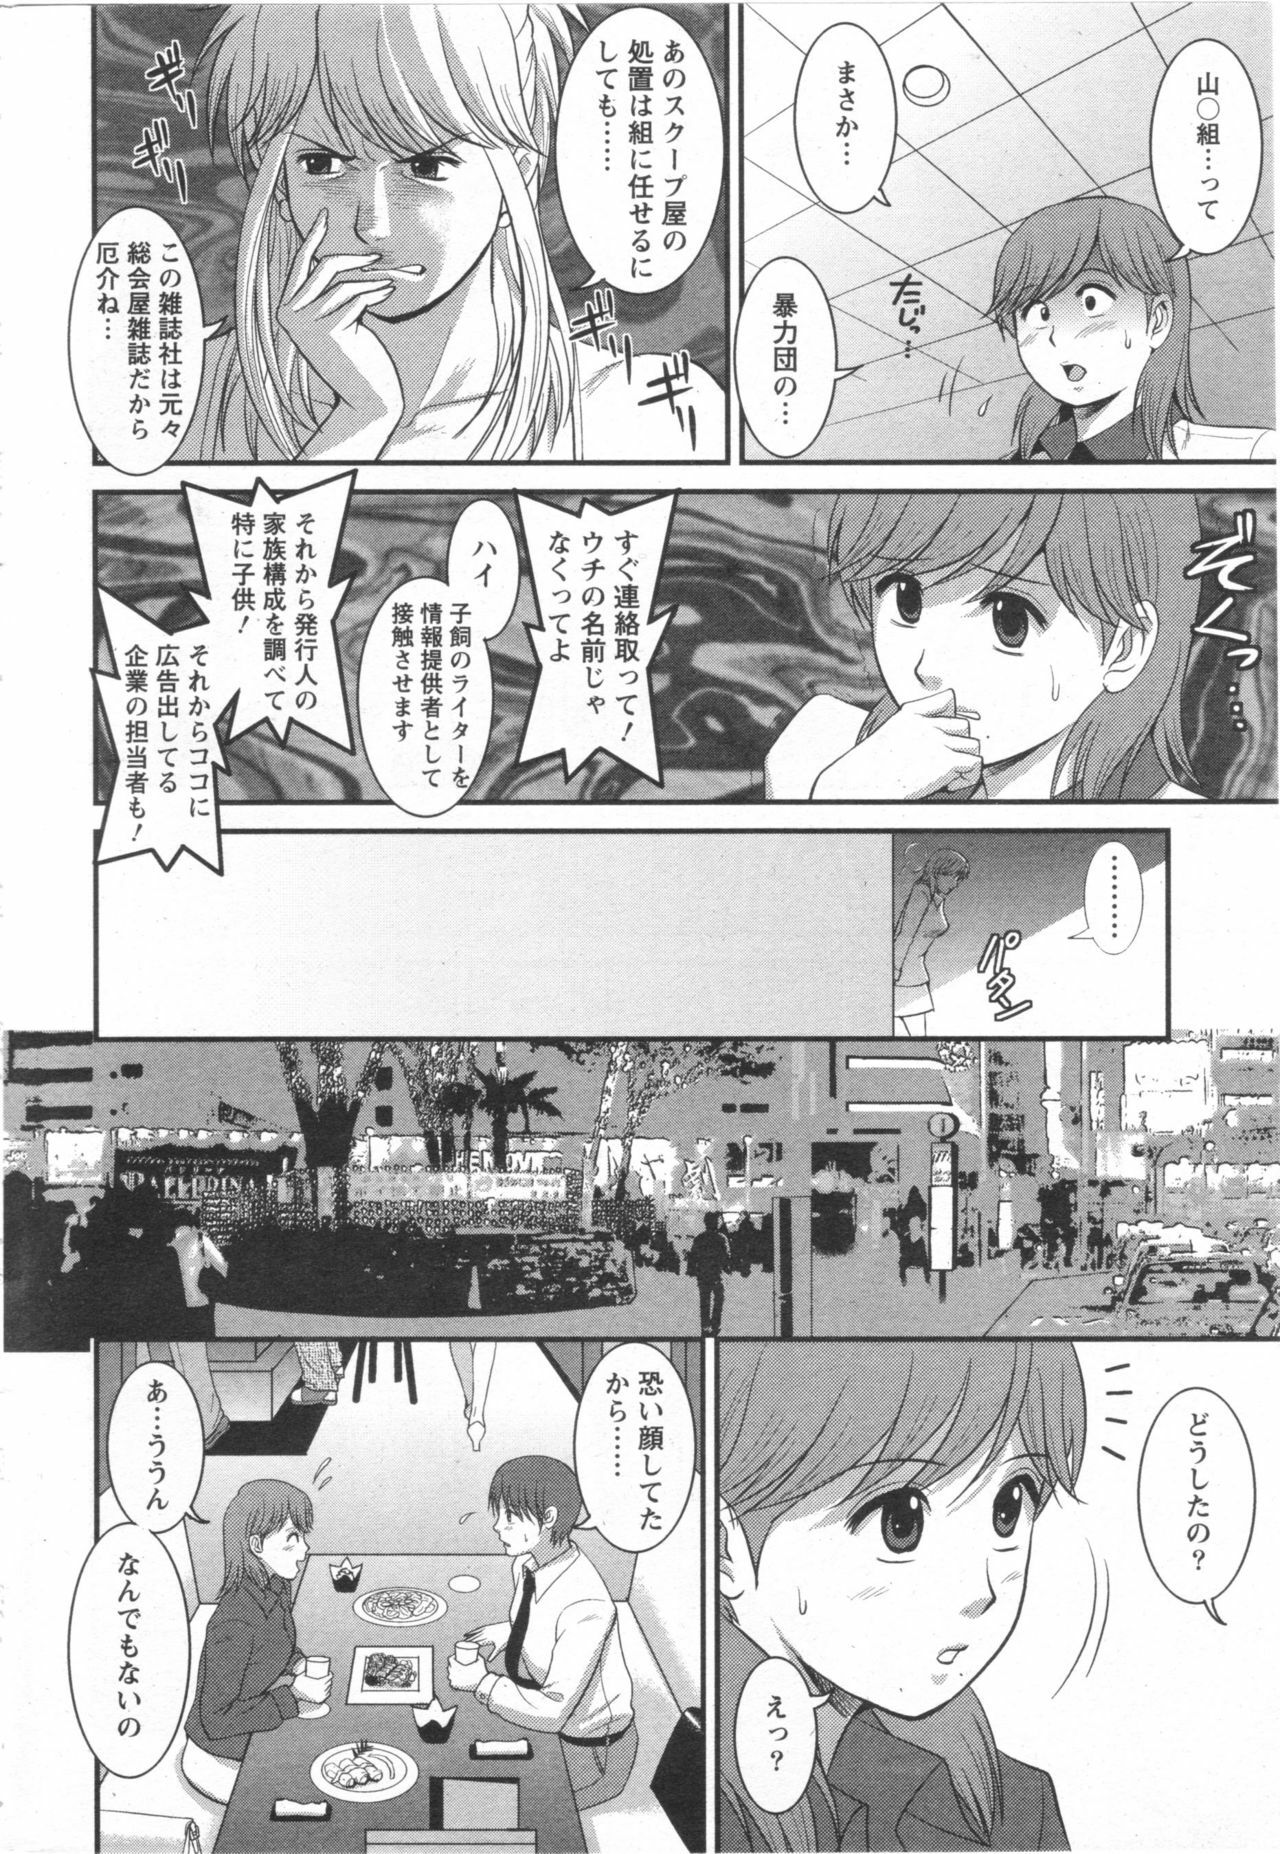 Haken no Muuko-san 10 [Saigado] page 9 full